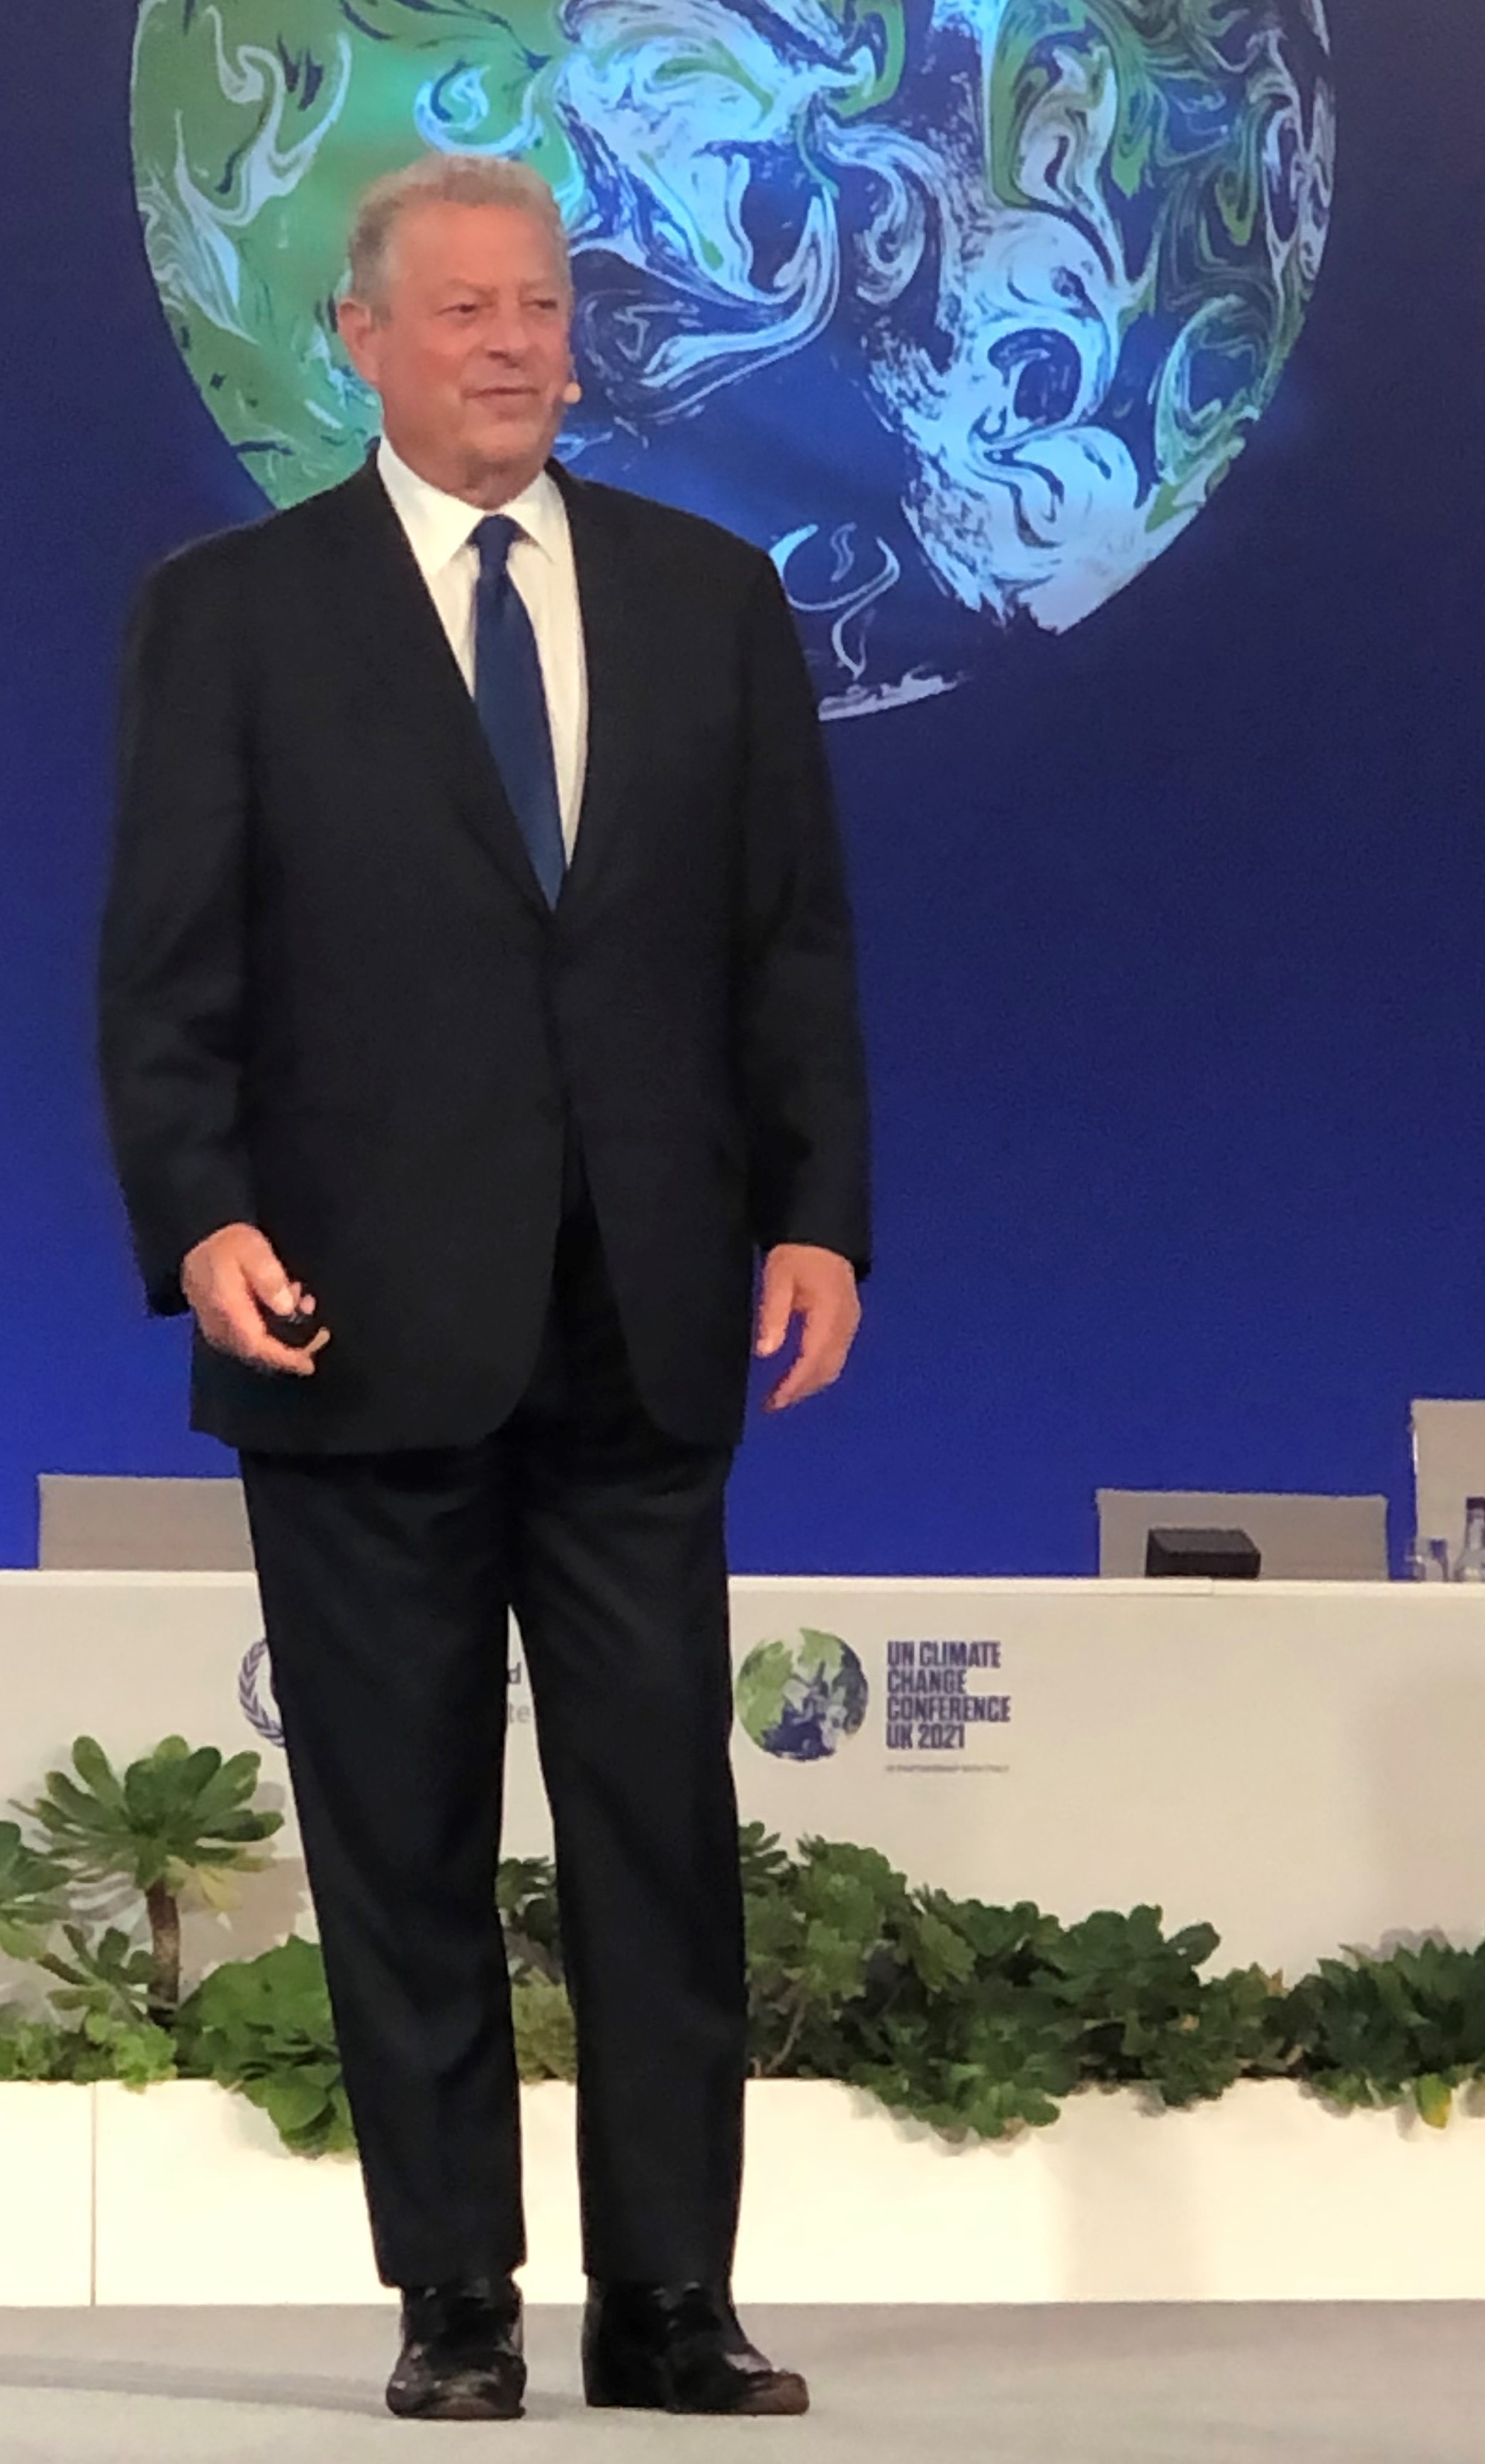 Al Gore speaking at COP26